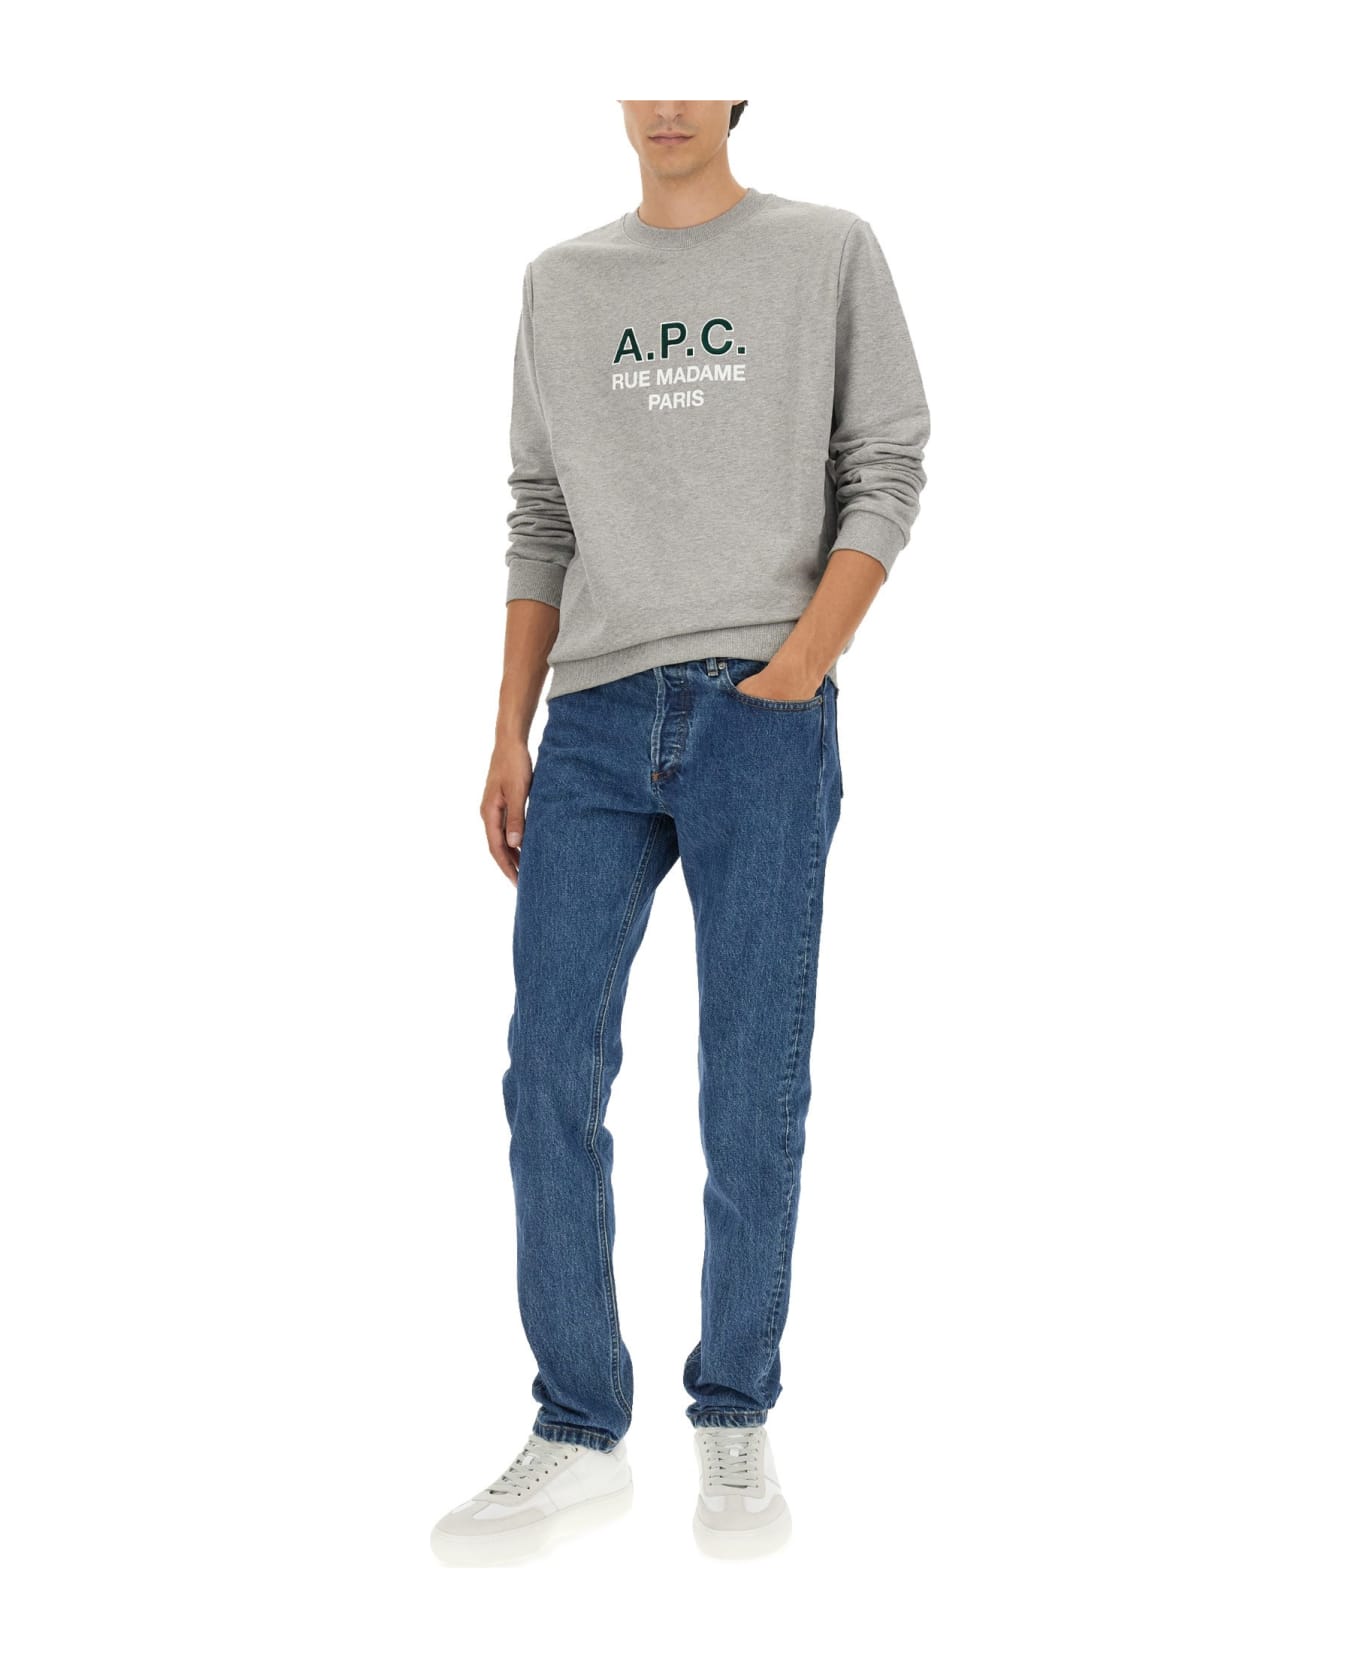 A.P.C. Sweatshirt With Logo - GRIGIO